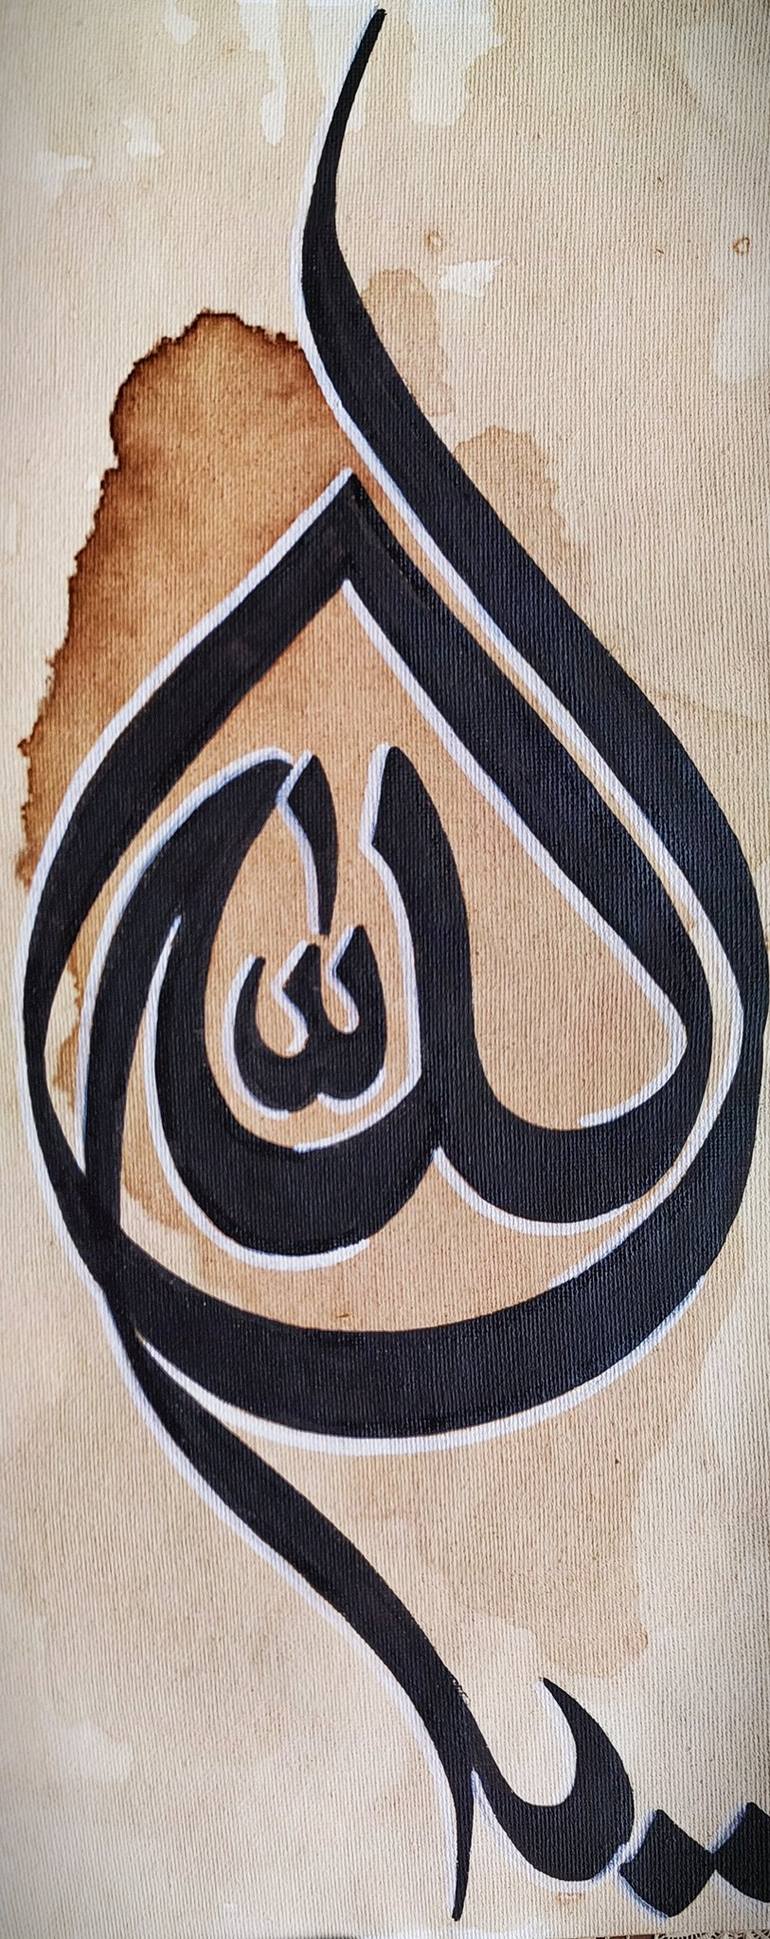 Allah - Names of Allah Calligraphy Painting by Muhammad Daniyal ...